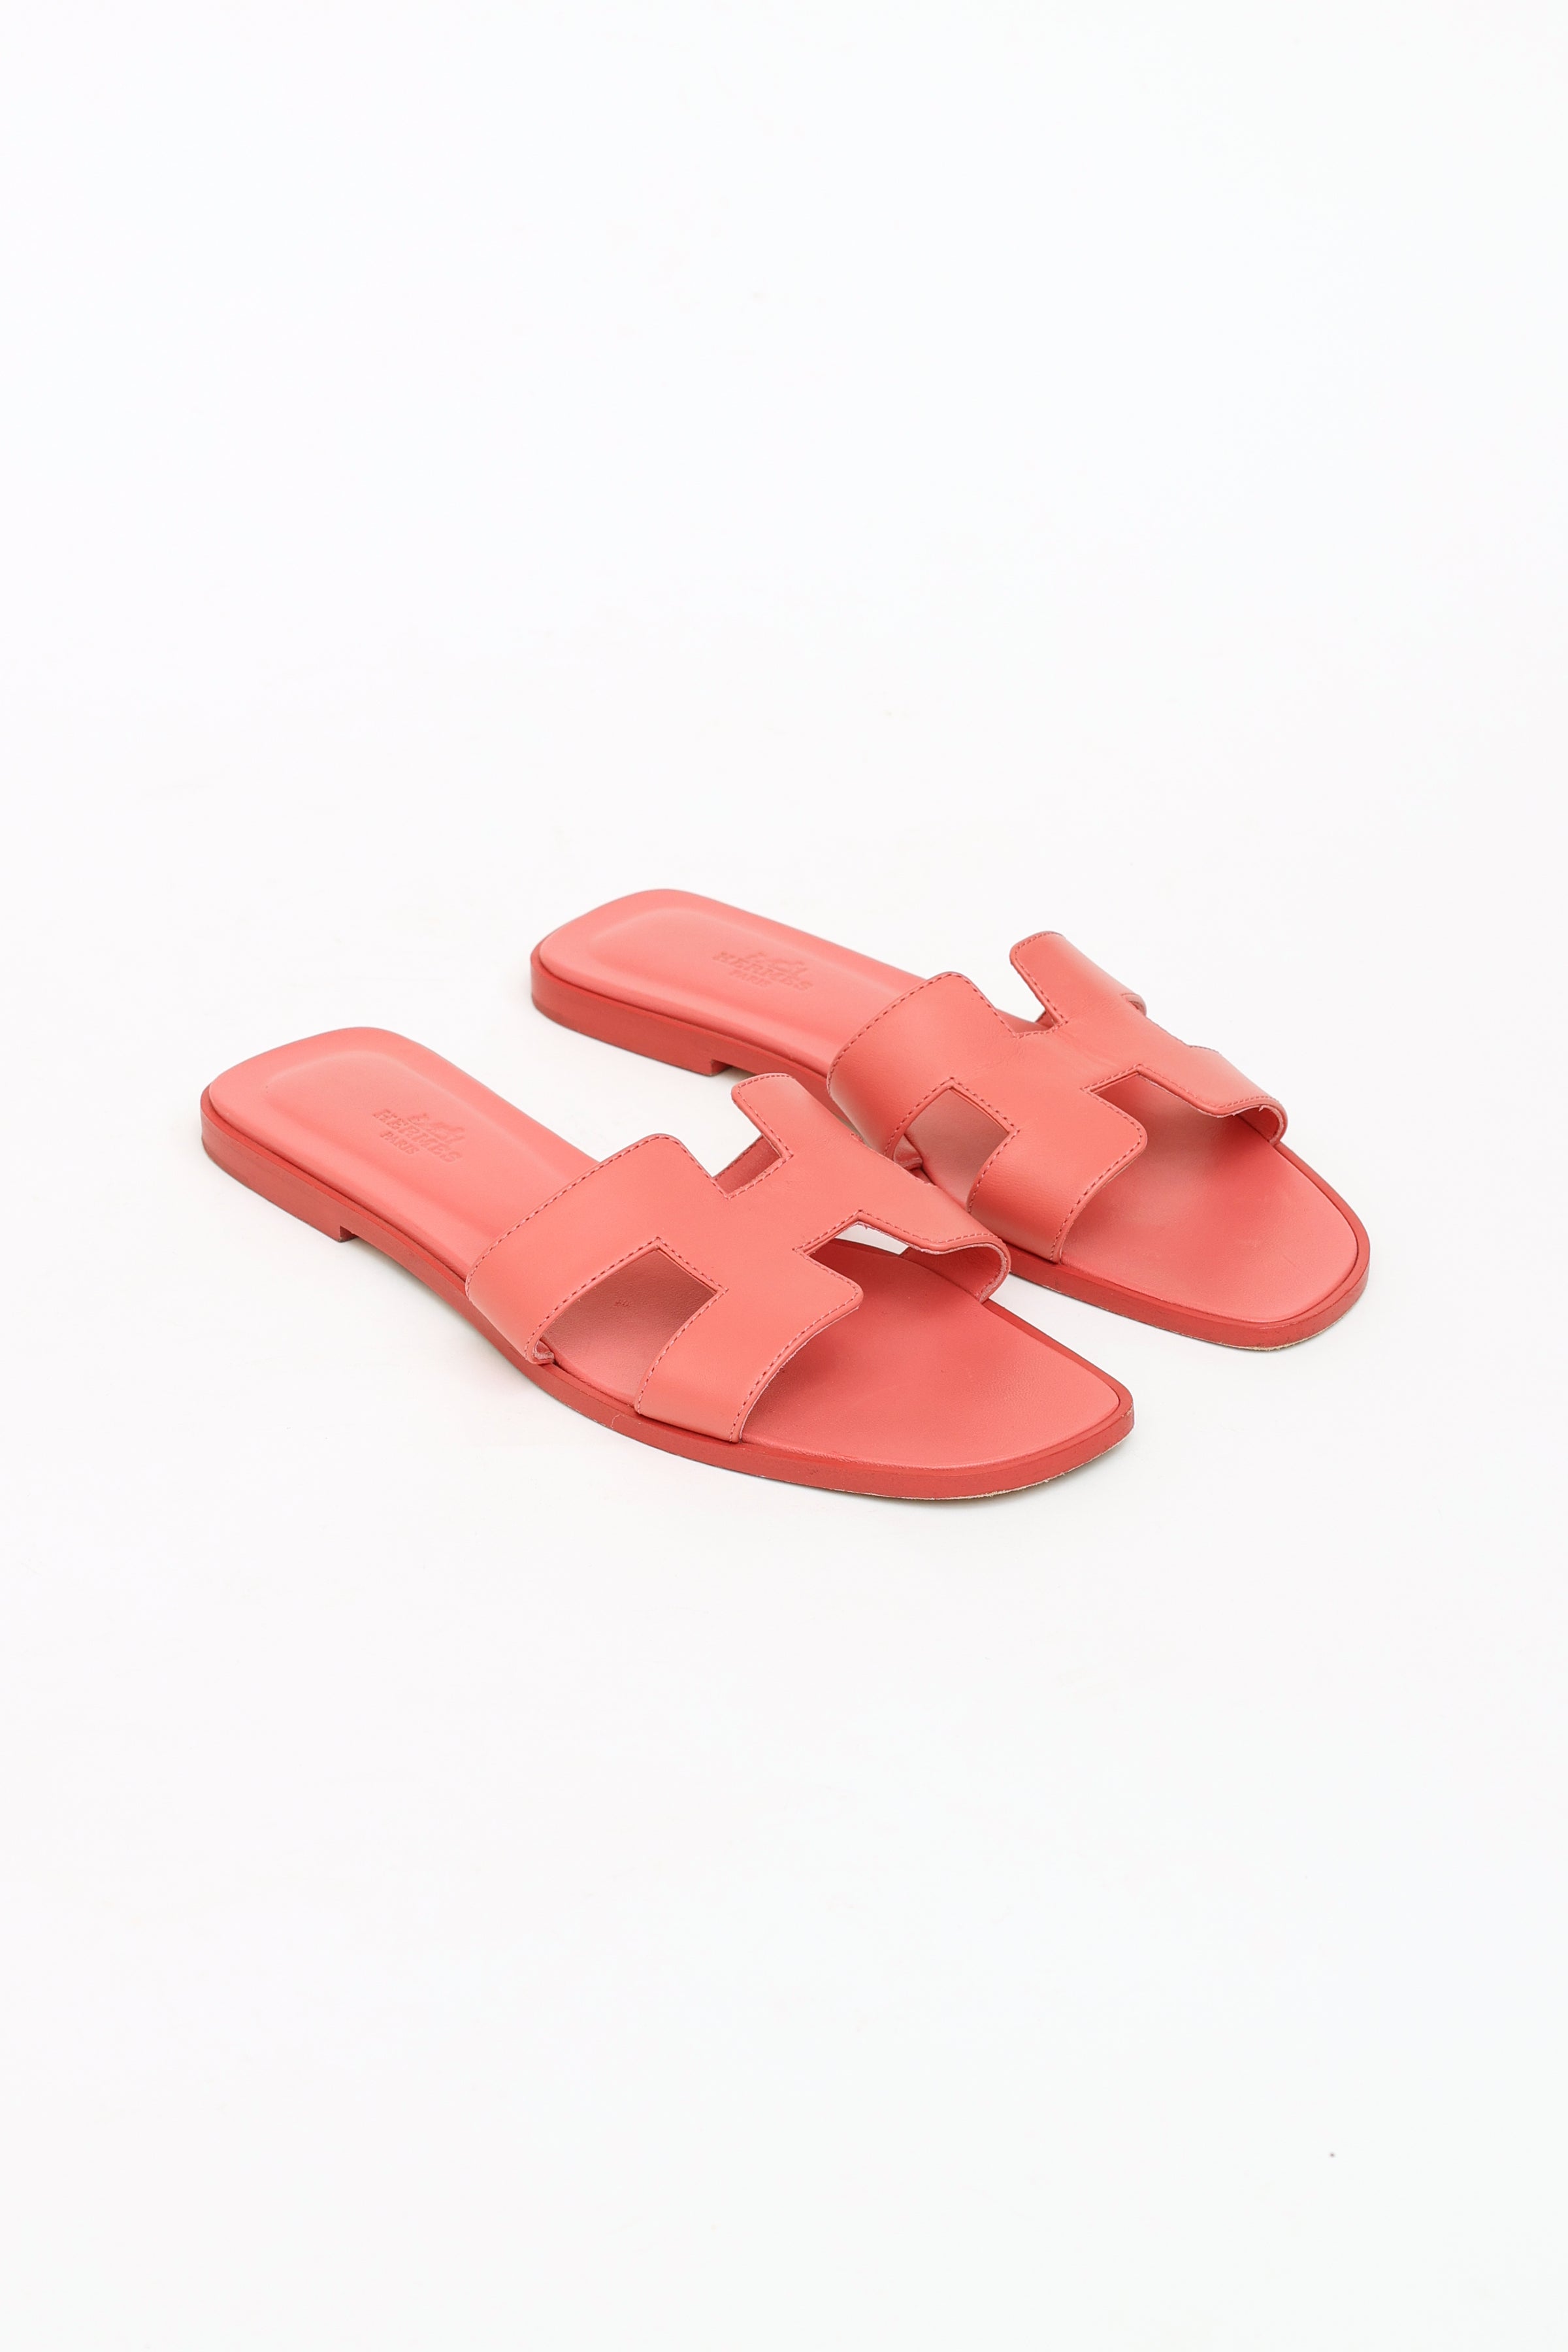 HERMES Patent Oran Sandals 38 Rose Jaipur 395361